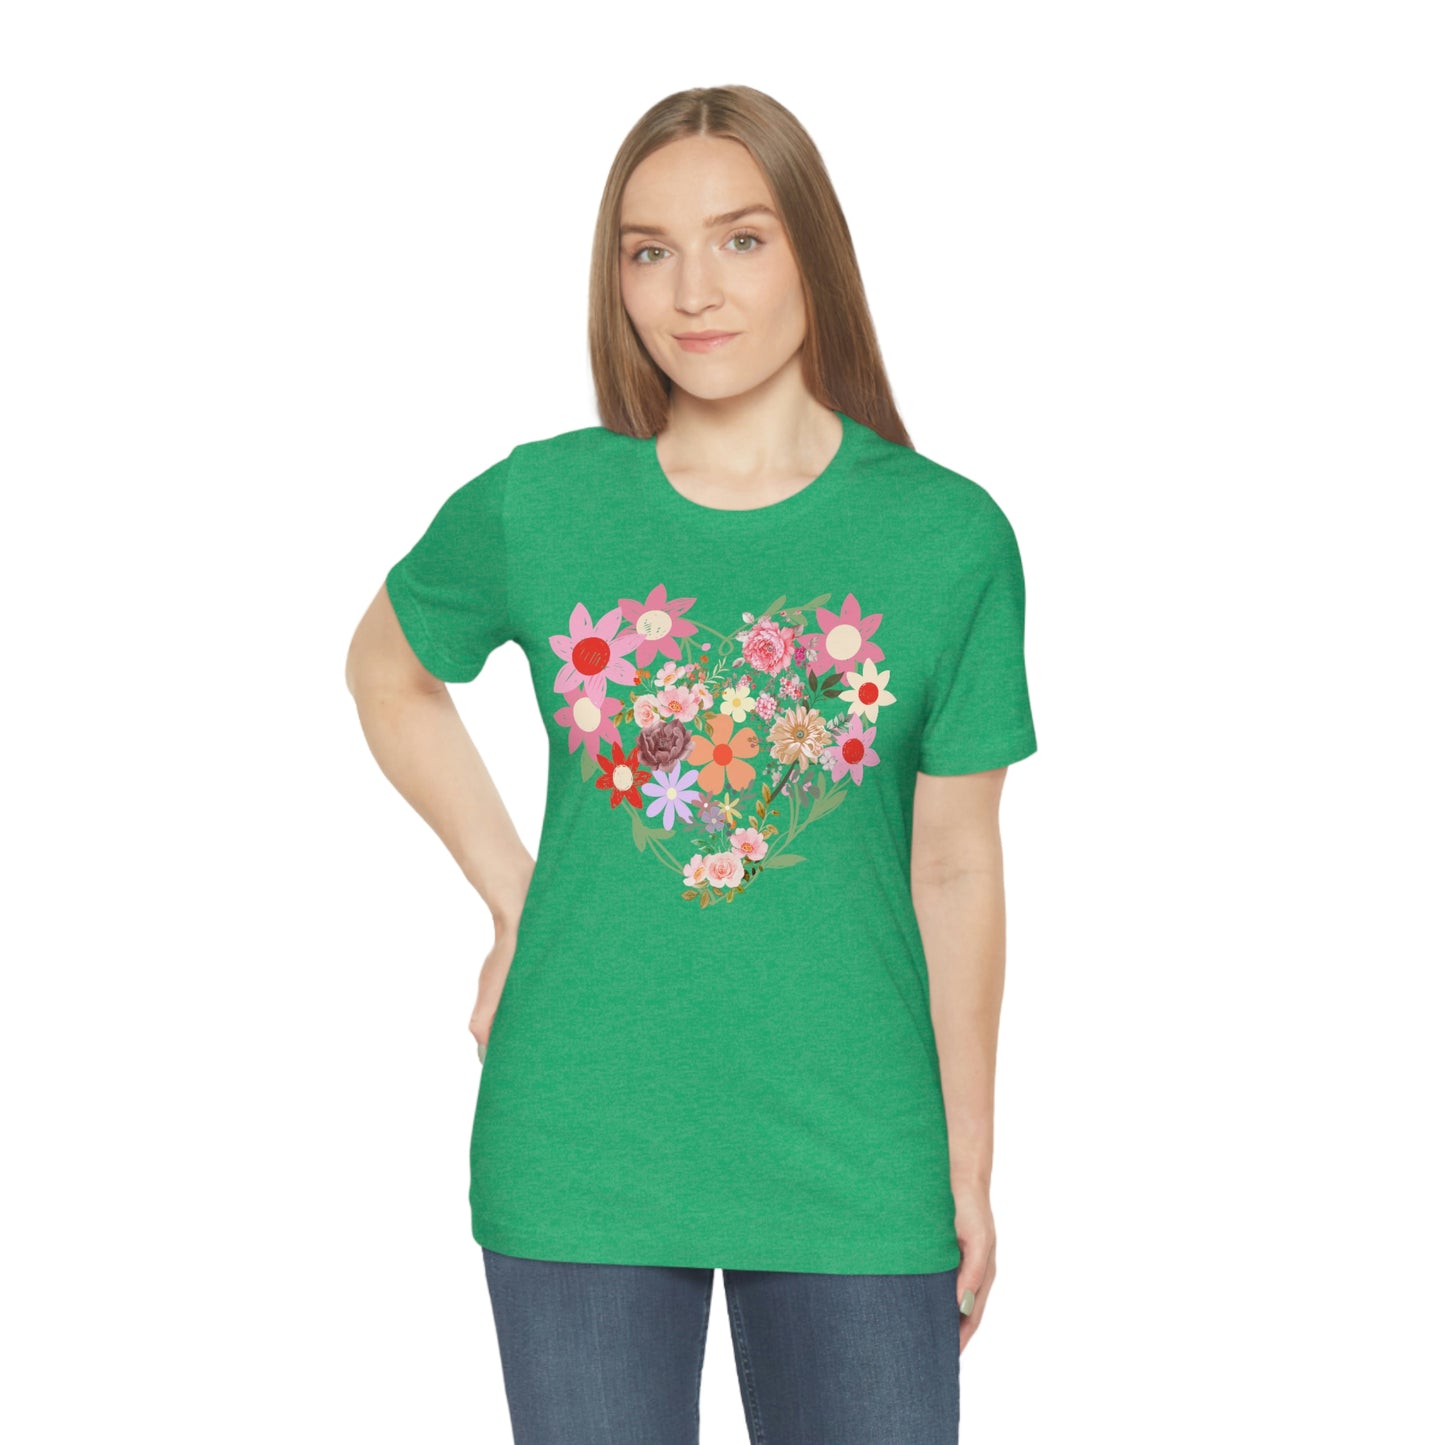 Flower Heart Shirt - Love Shirt - Floral Heart Shirt